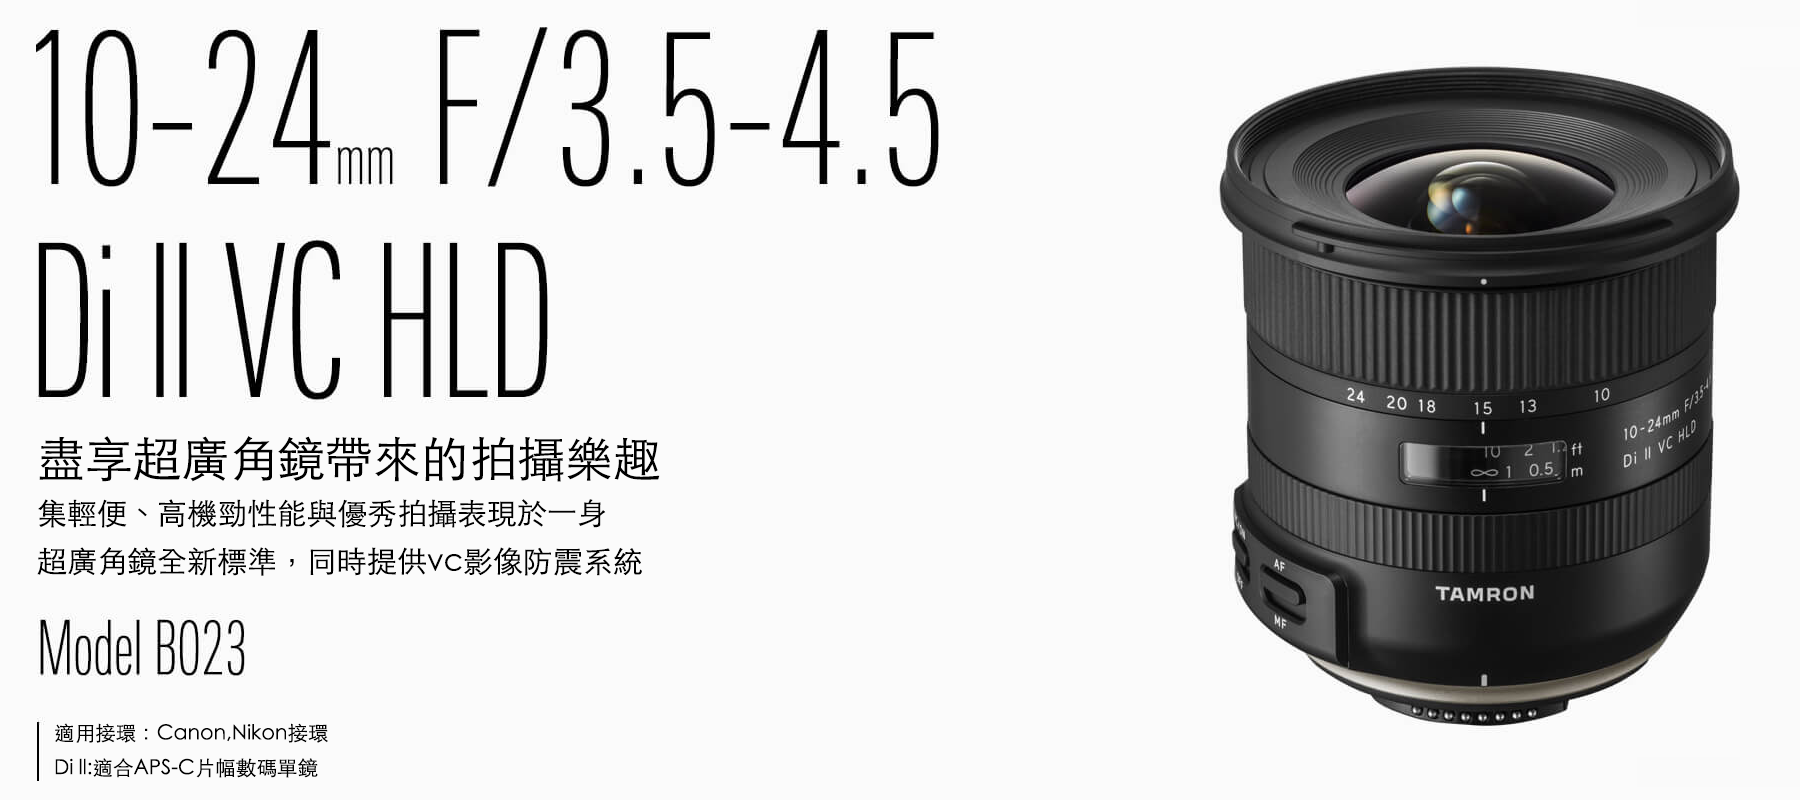 未使用・未開封品)Tamron 10-24mm F 3.5-4.5 Di-II VC HLD 広角ズームレンズ Canon APS-C  デジタル一眼レフカメラ用 通販